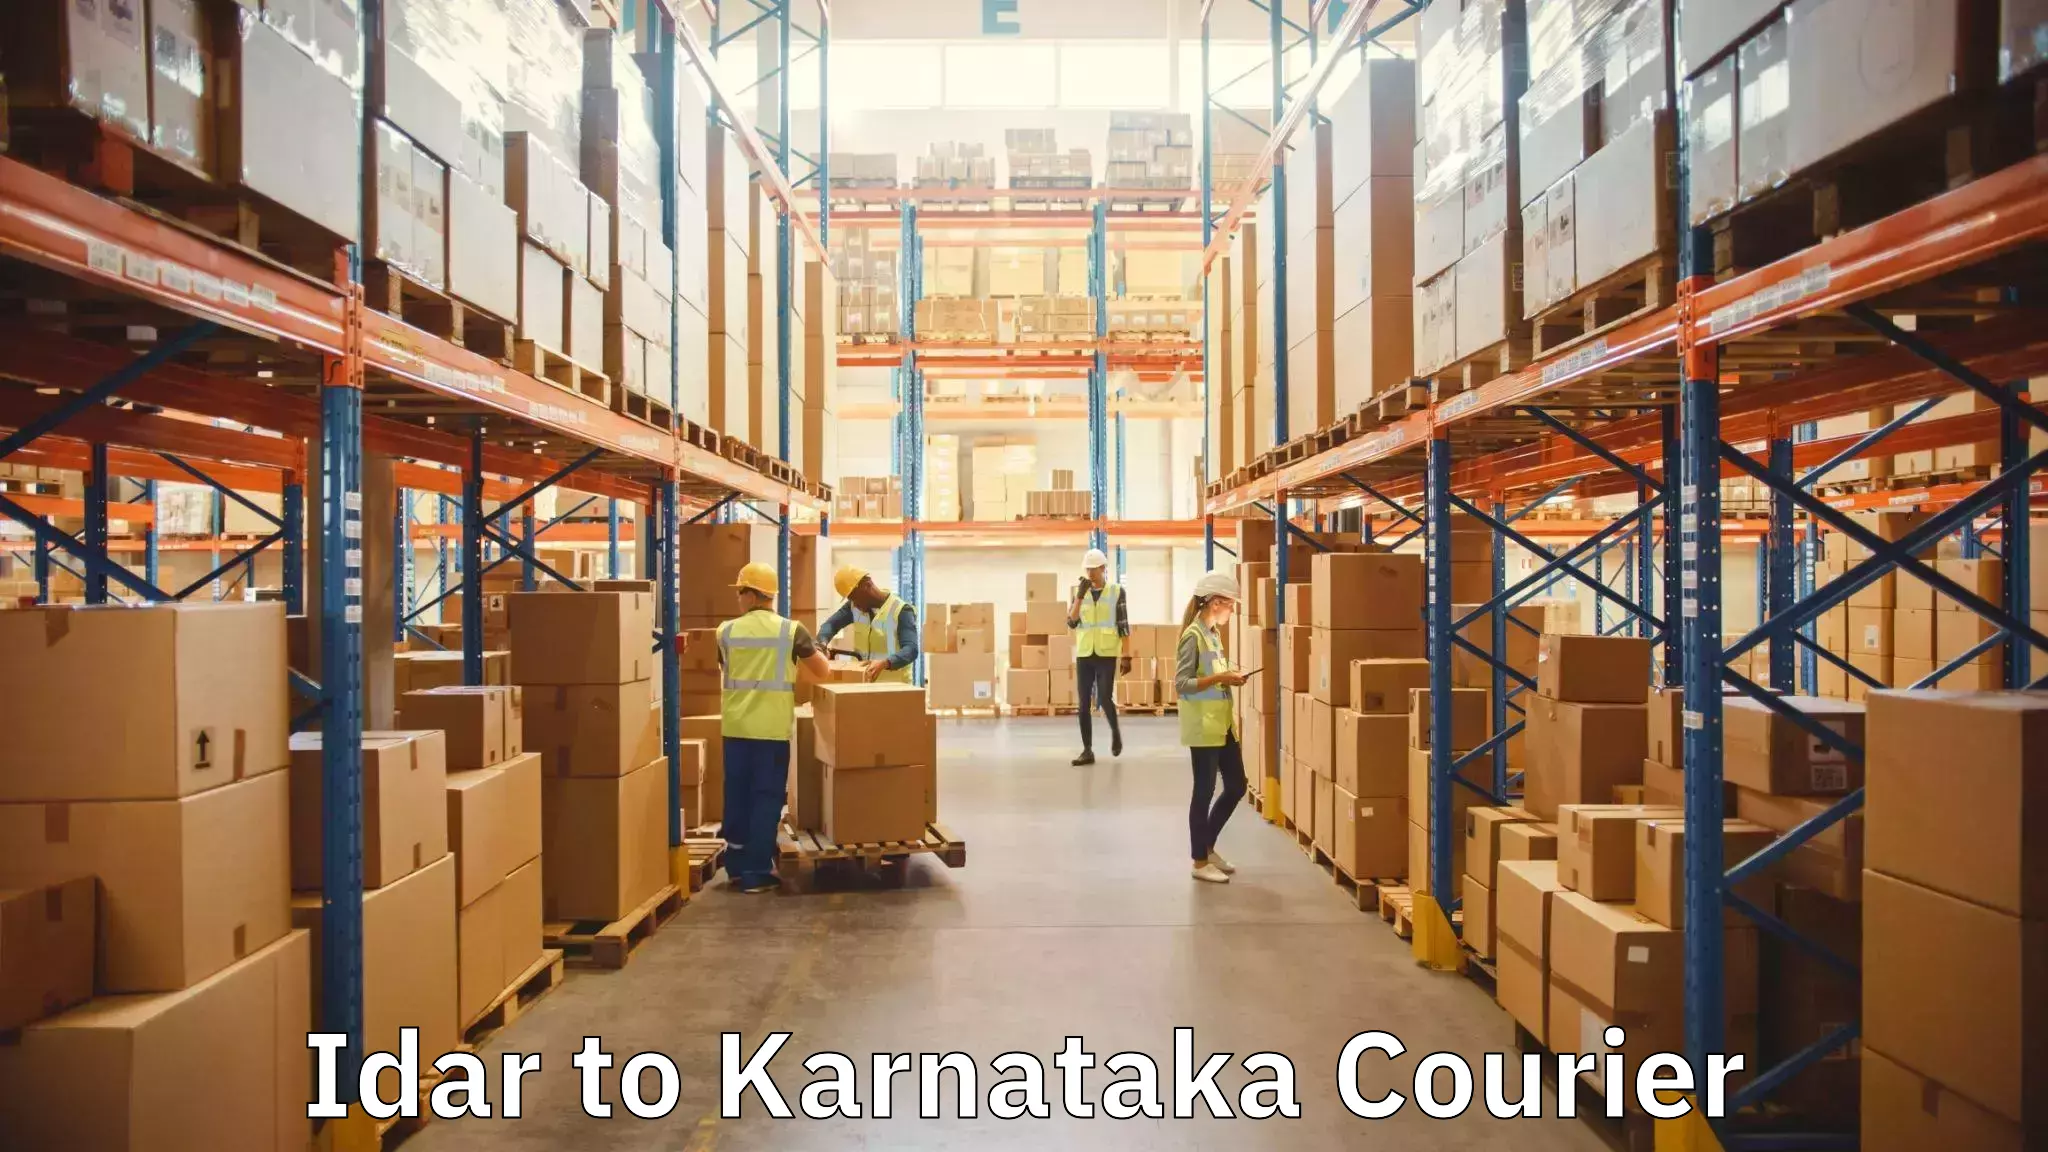 Furniture transport services Idar to Karnataka